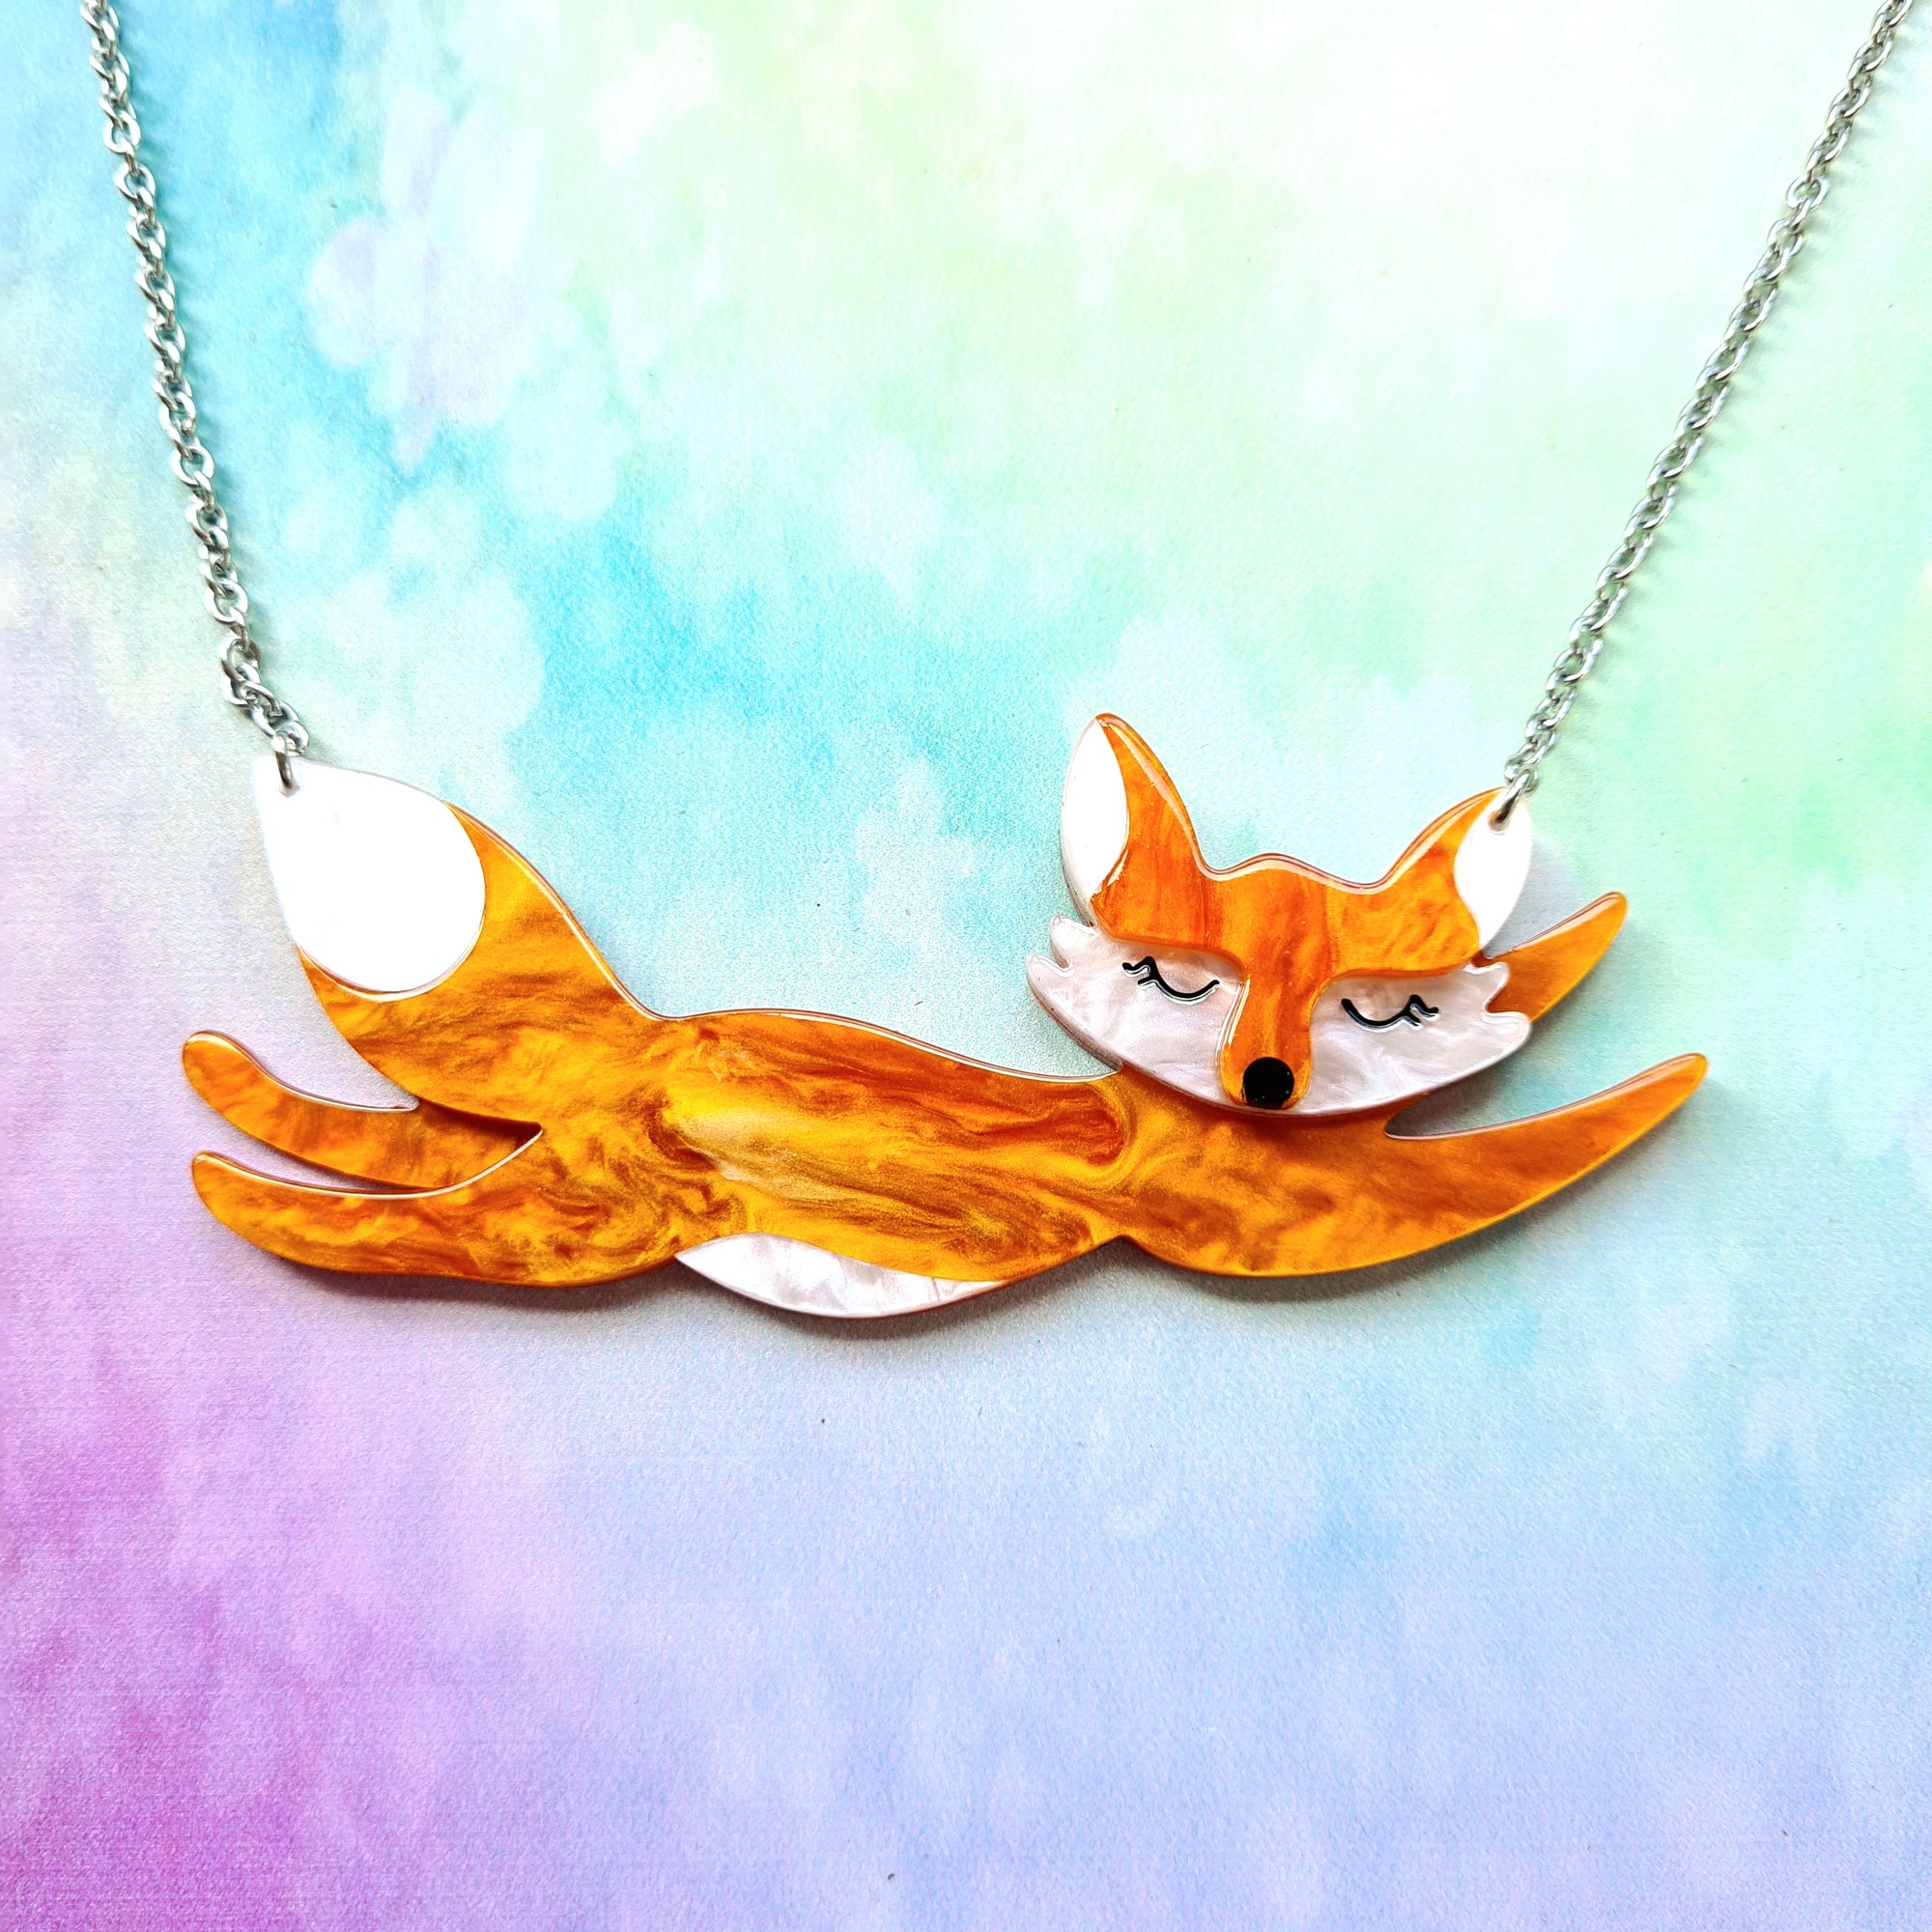 Flynn the Flying Fox Necklace by Erstwilder